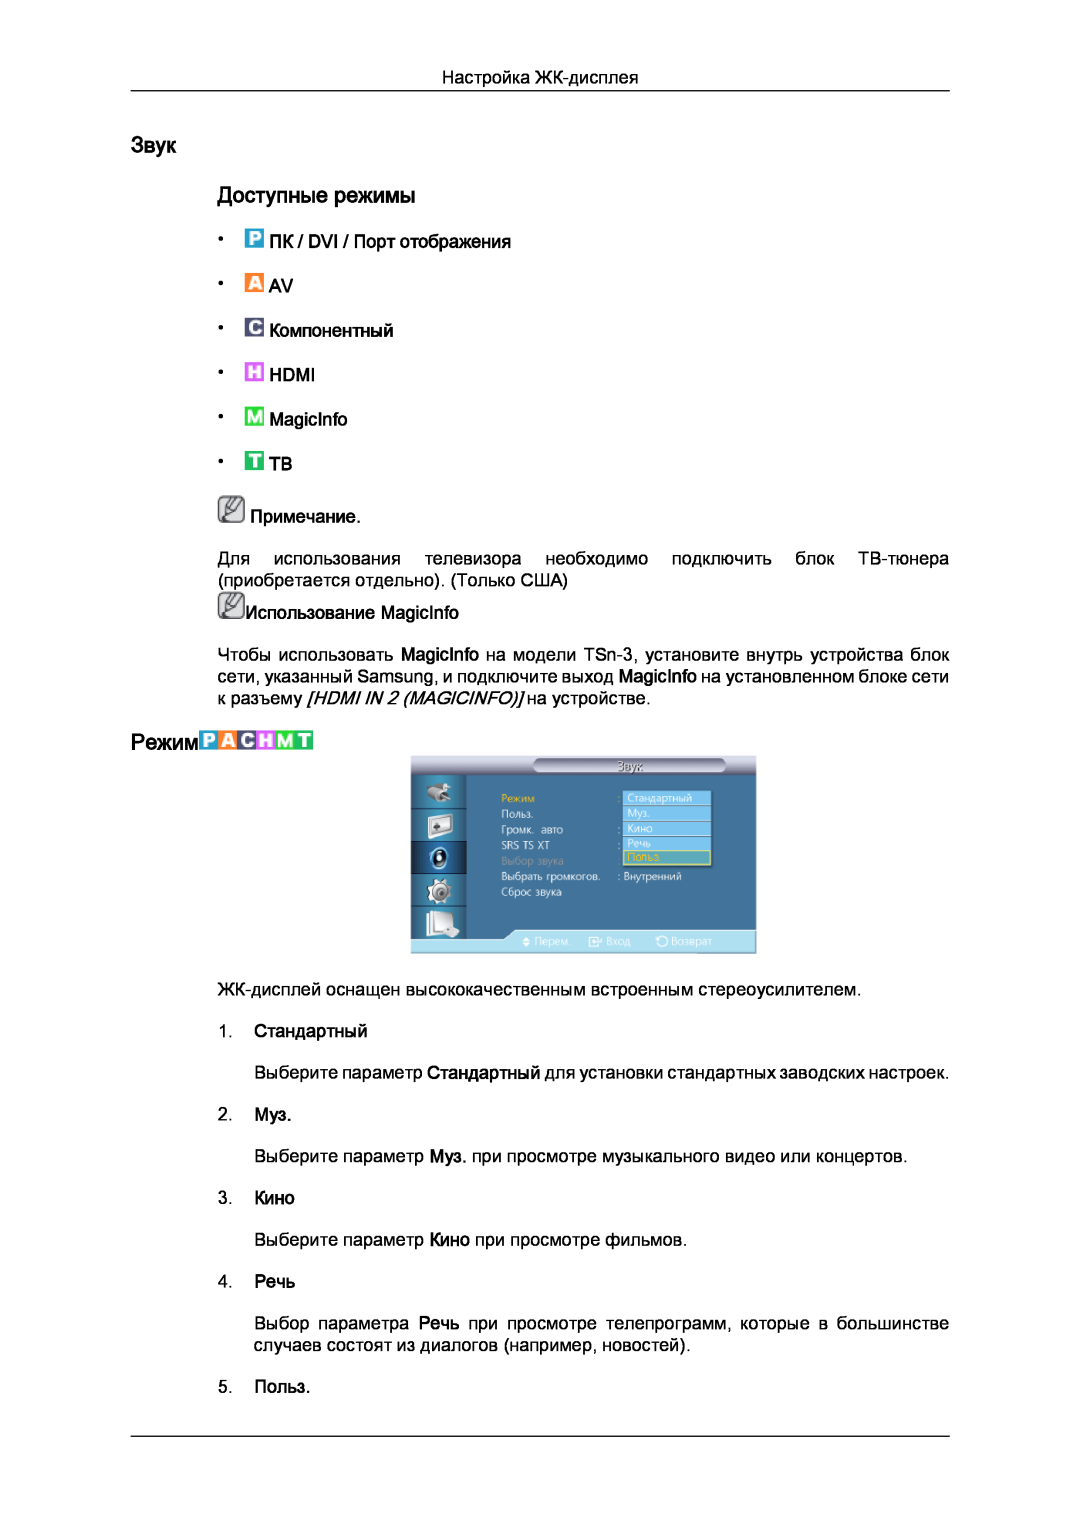 Samsung LH32CRSMBD/EN manual Звук Доступные режимы, 1. Стандартный, 2. Муз, 3. Кино, 4. Речь, 5. Польз, Режим, Примечание 